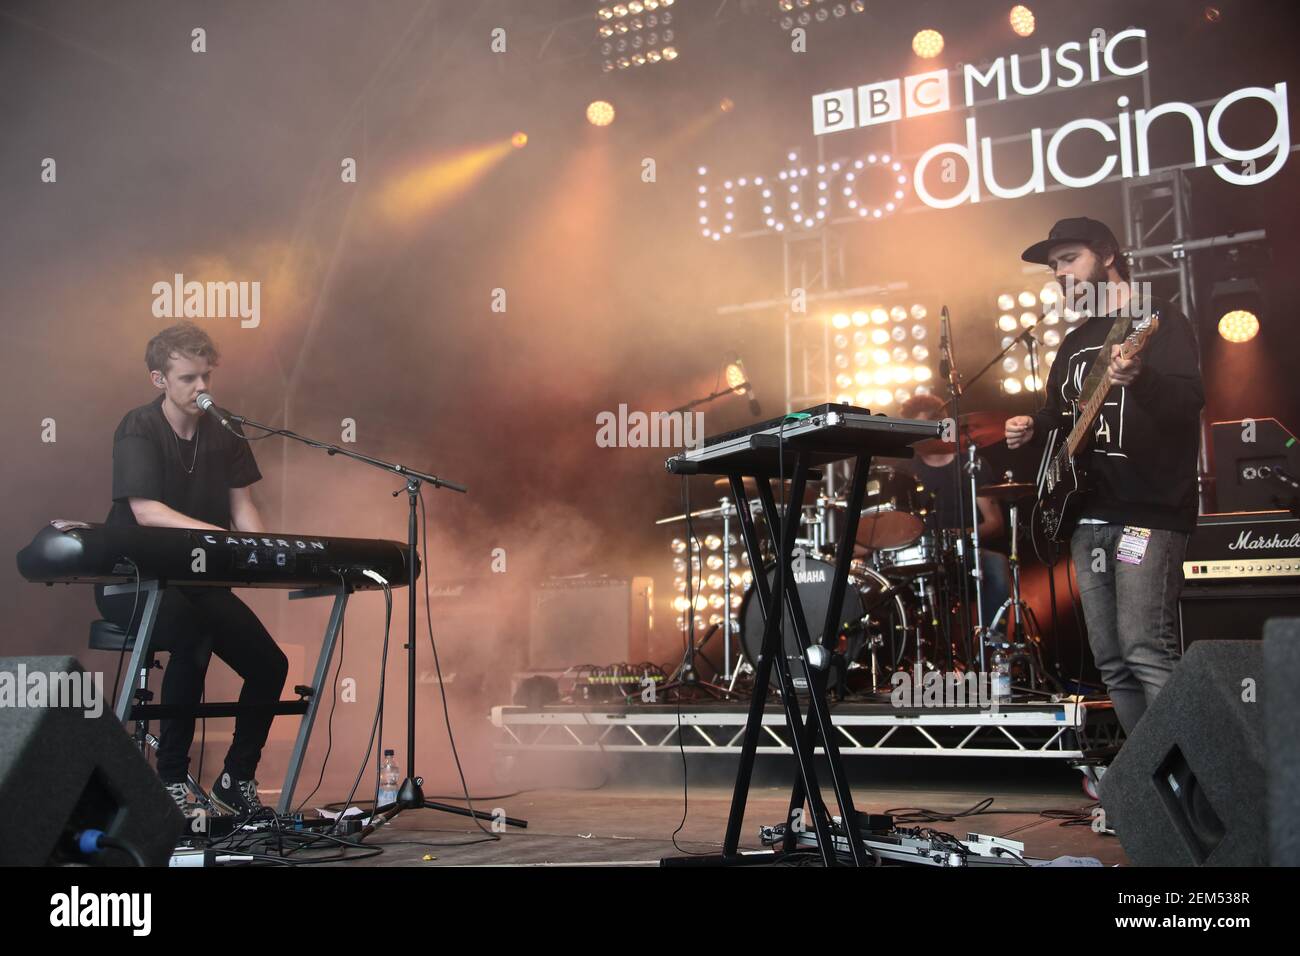 Cameron AG live auf der BBC Discovering Stage am 2. Tag des 2016 Reading Festivals. Bilddatum: Freitag, 26. August 2016. Bildnachweis shou Stockfoto